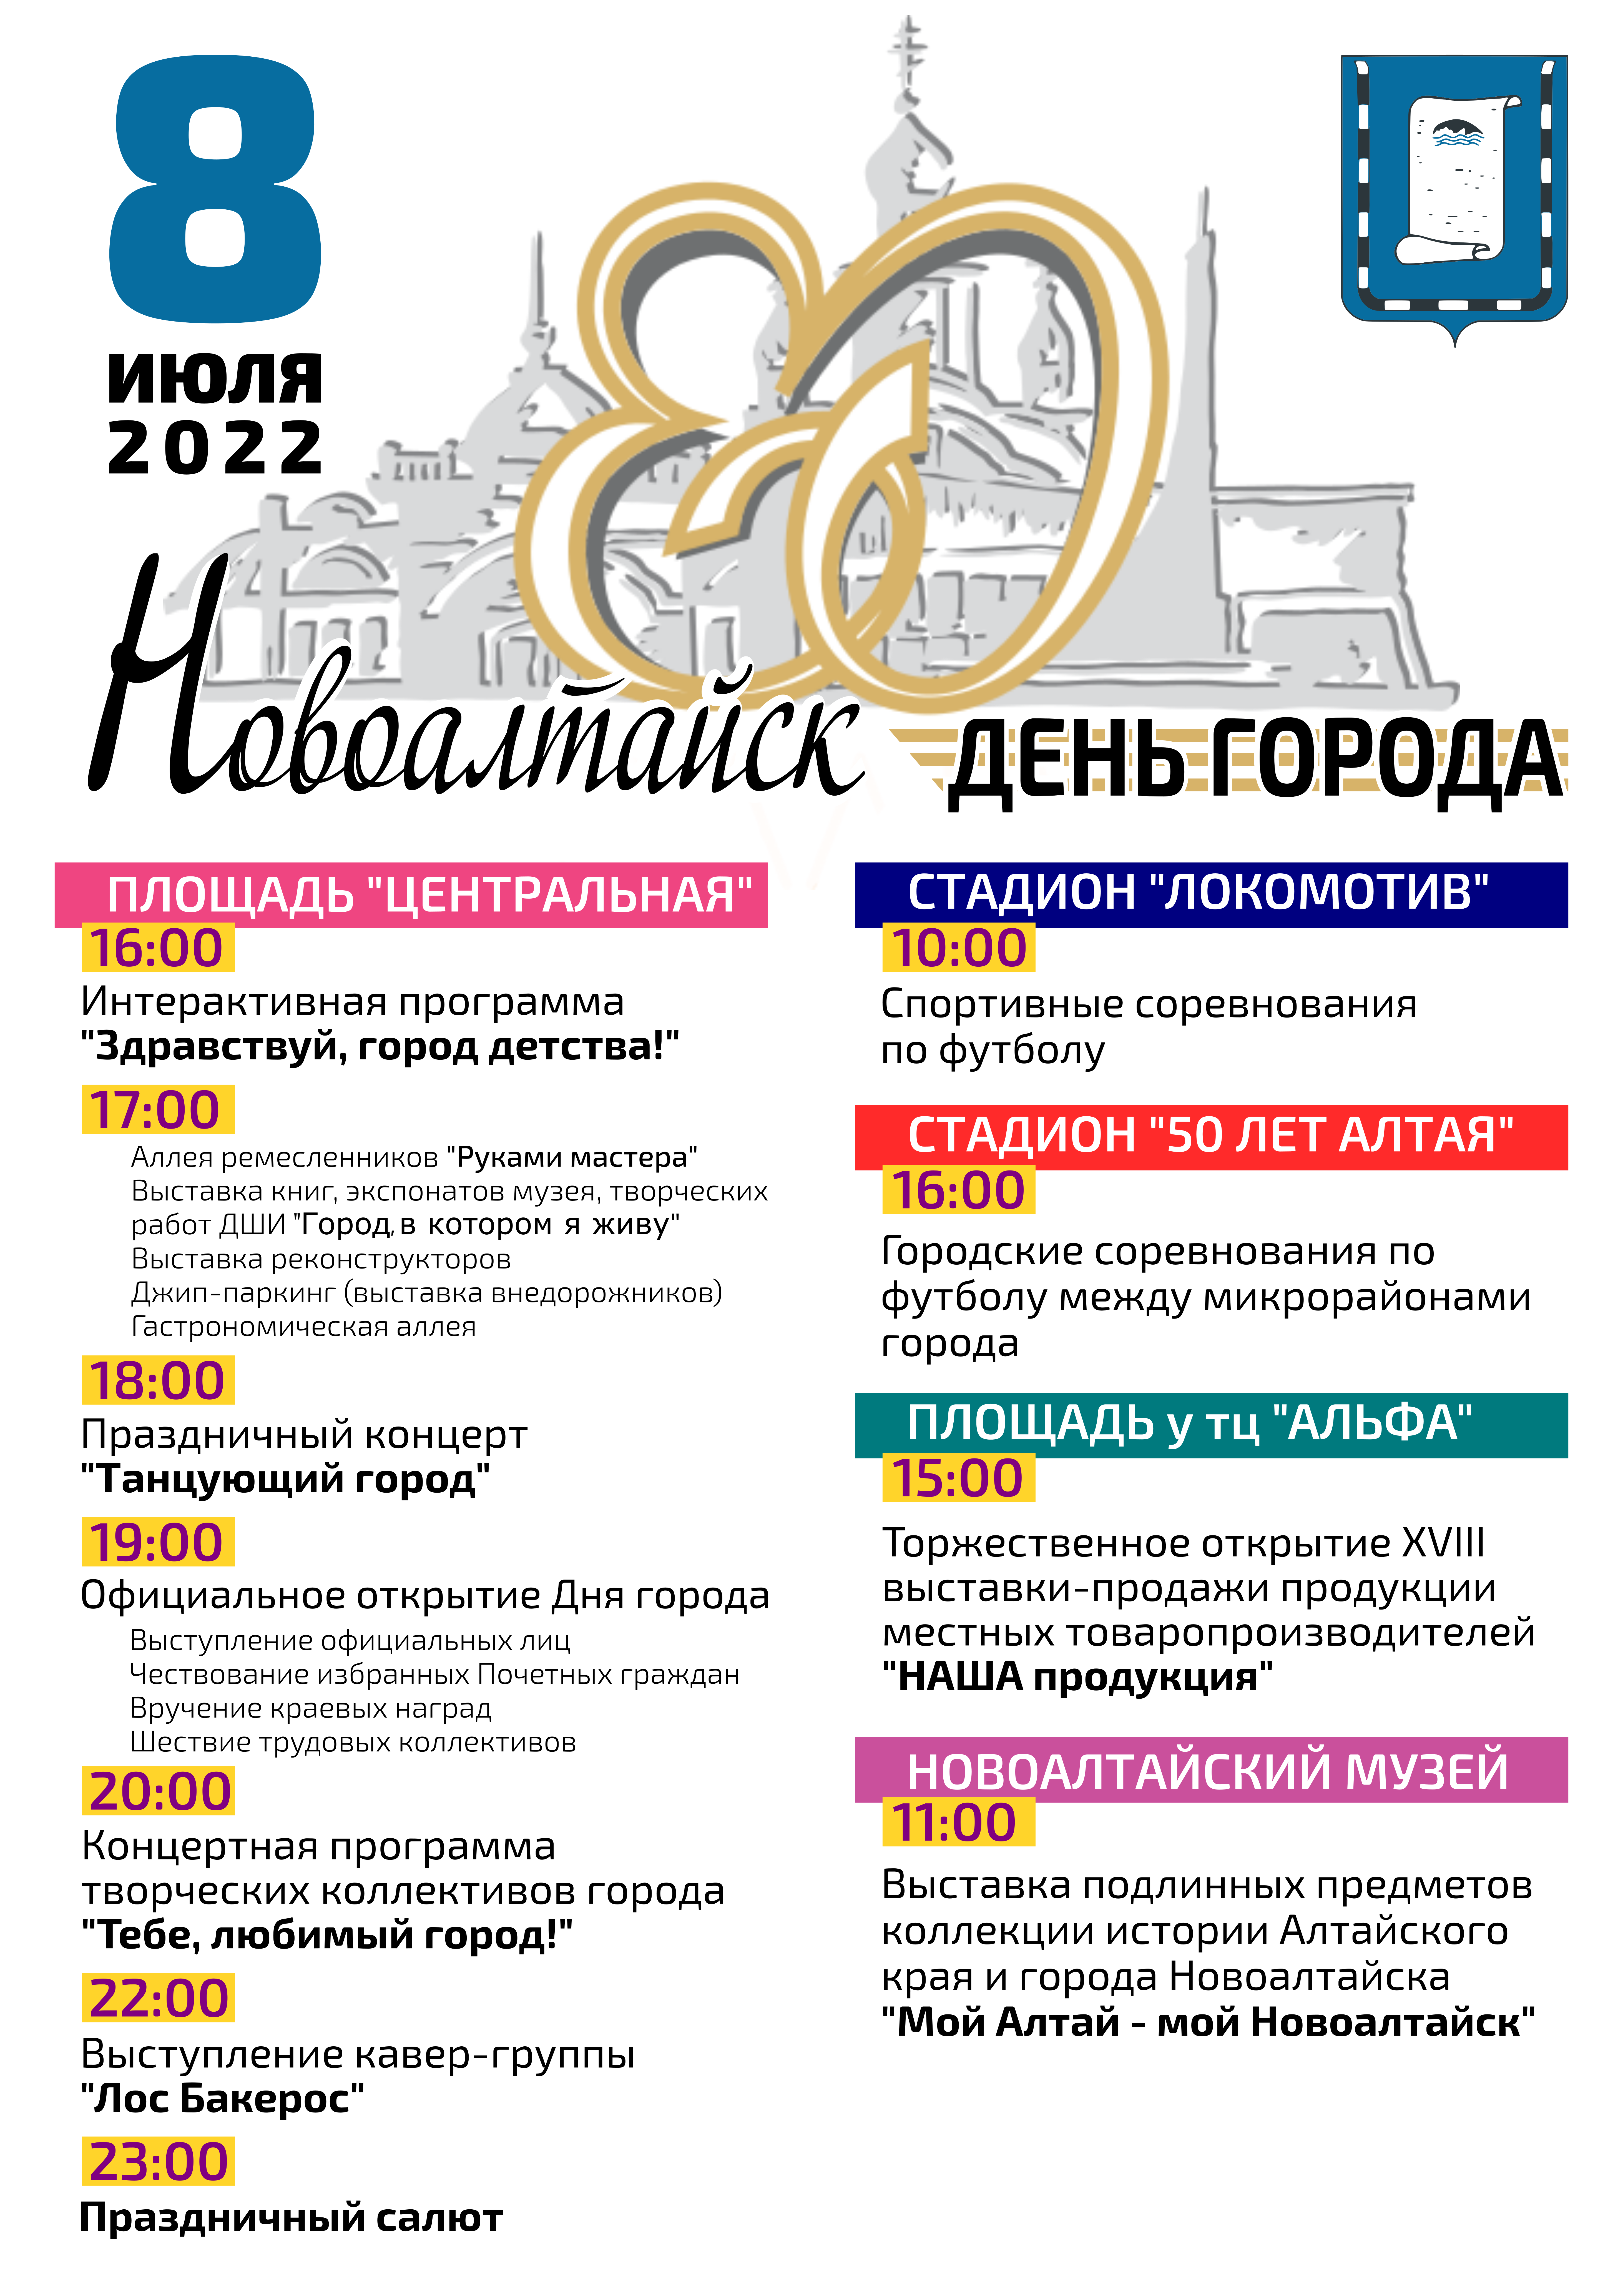 Афиша мероприятий, посвященных 80-летию г.Новоалтайска!